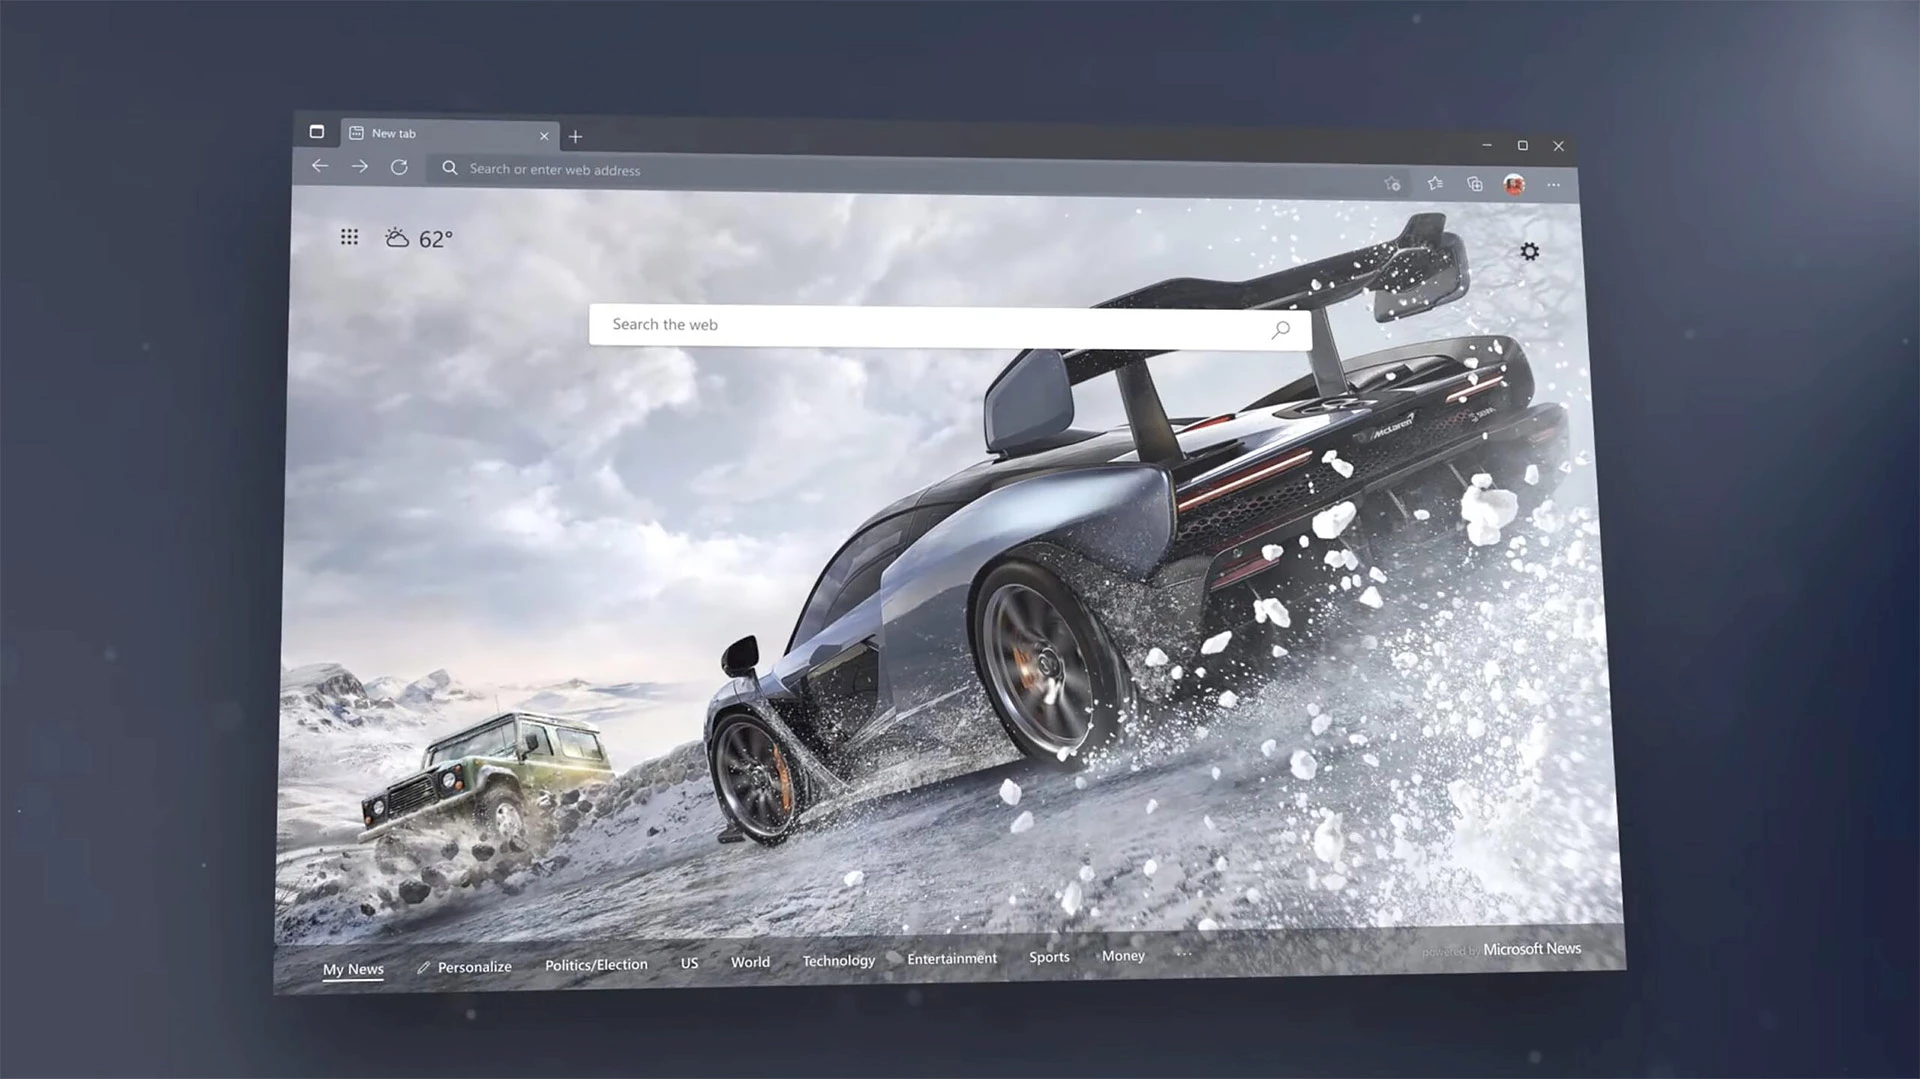 Forza Horizon 4 theme.